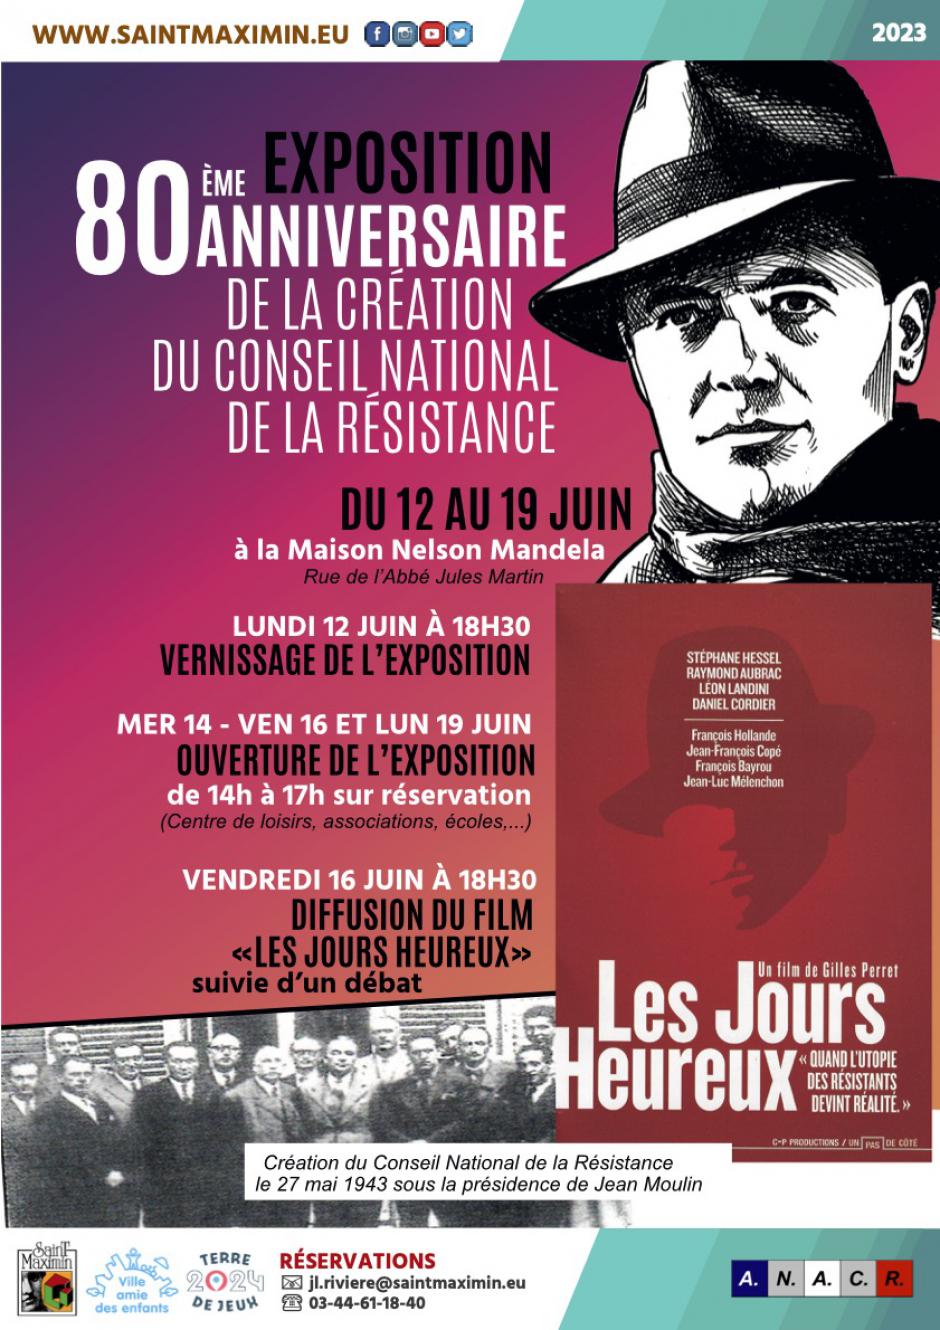  12 au 19 juin, Saint-Maximin - 80e anniversaire de la création du Conseil national de la Résistance